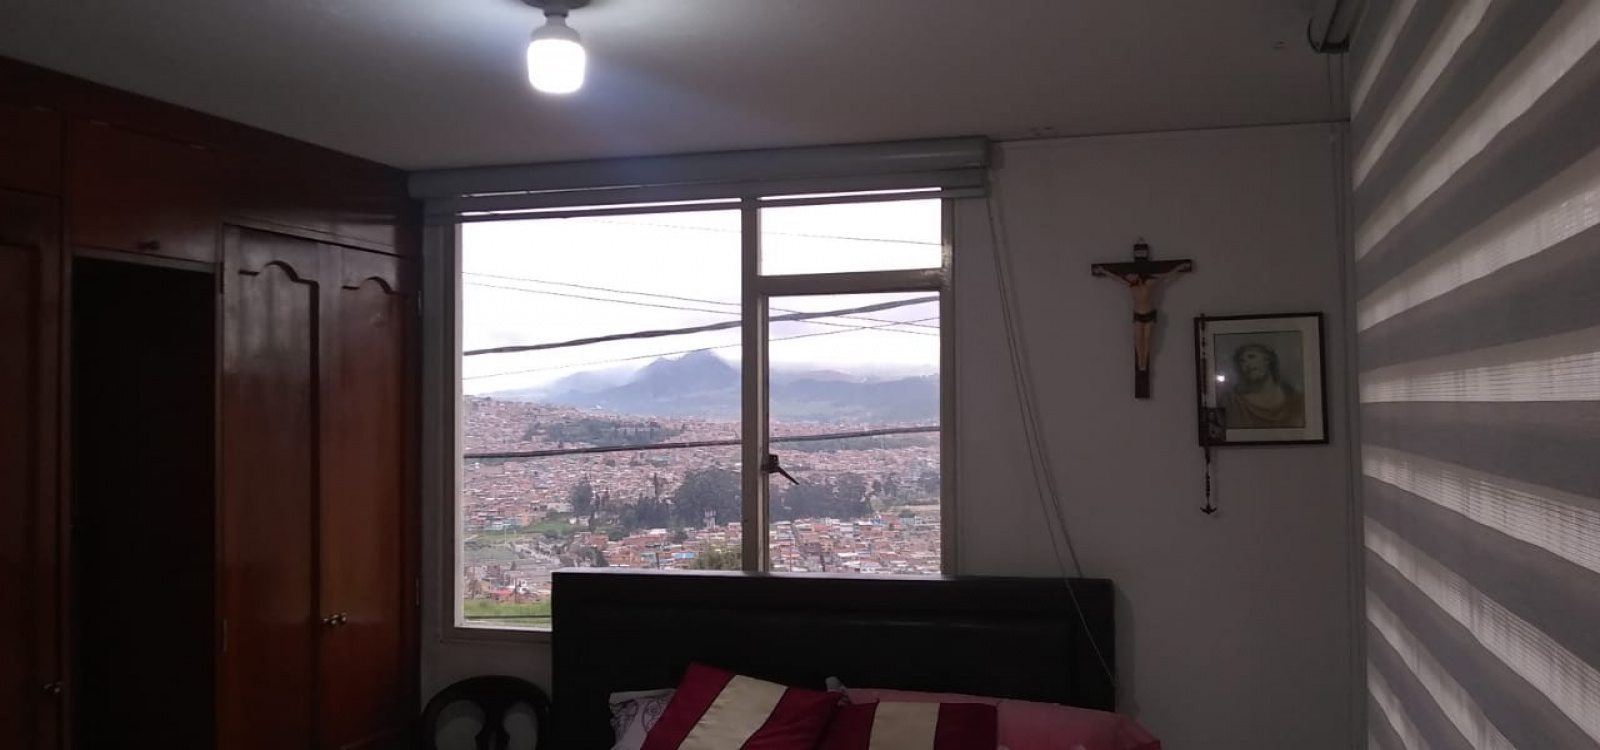 39 G 16 SUR 8 BIS, Bogotá, Sur, Las Lomas, 5 Habitaciones Habitaciones,3 BathroomsBathrooms,Casas,Venta,8 BIS ,3394